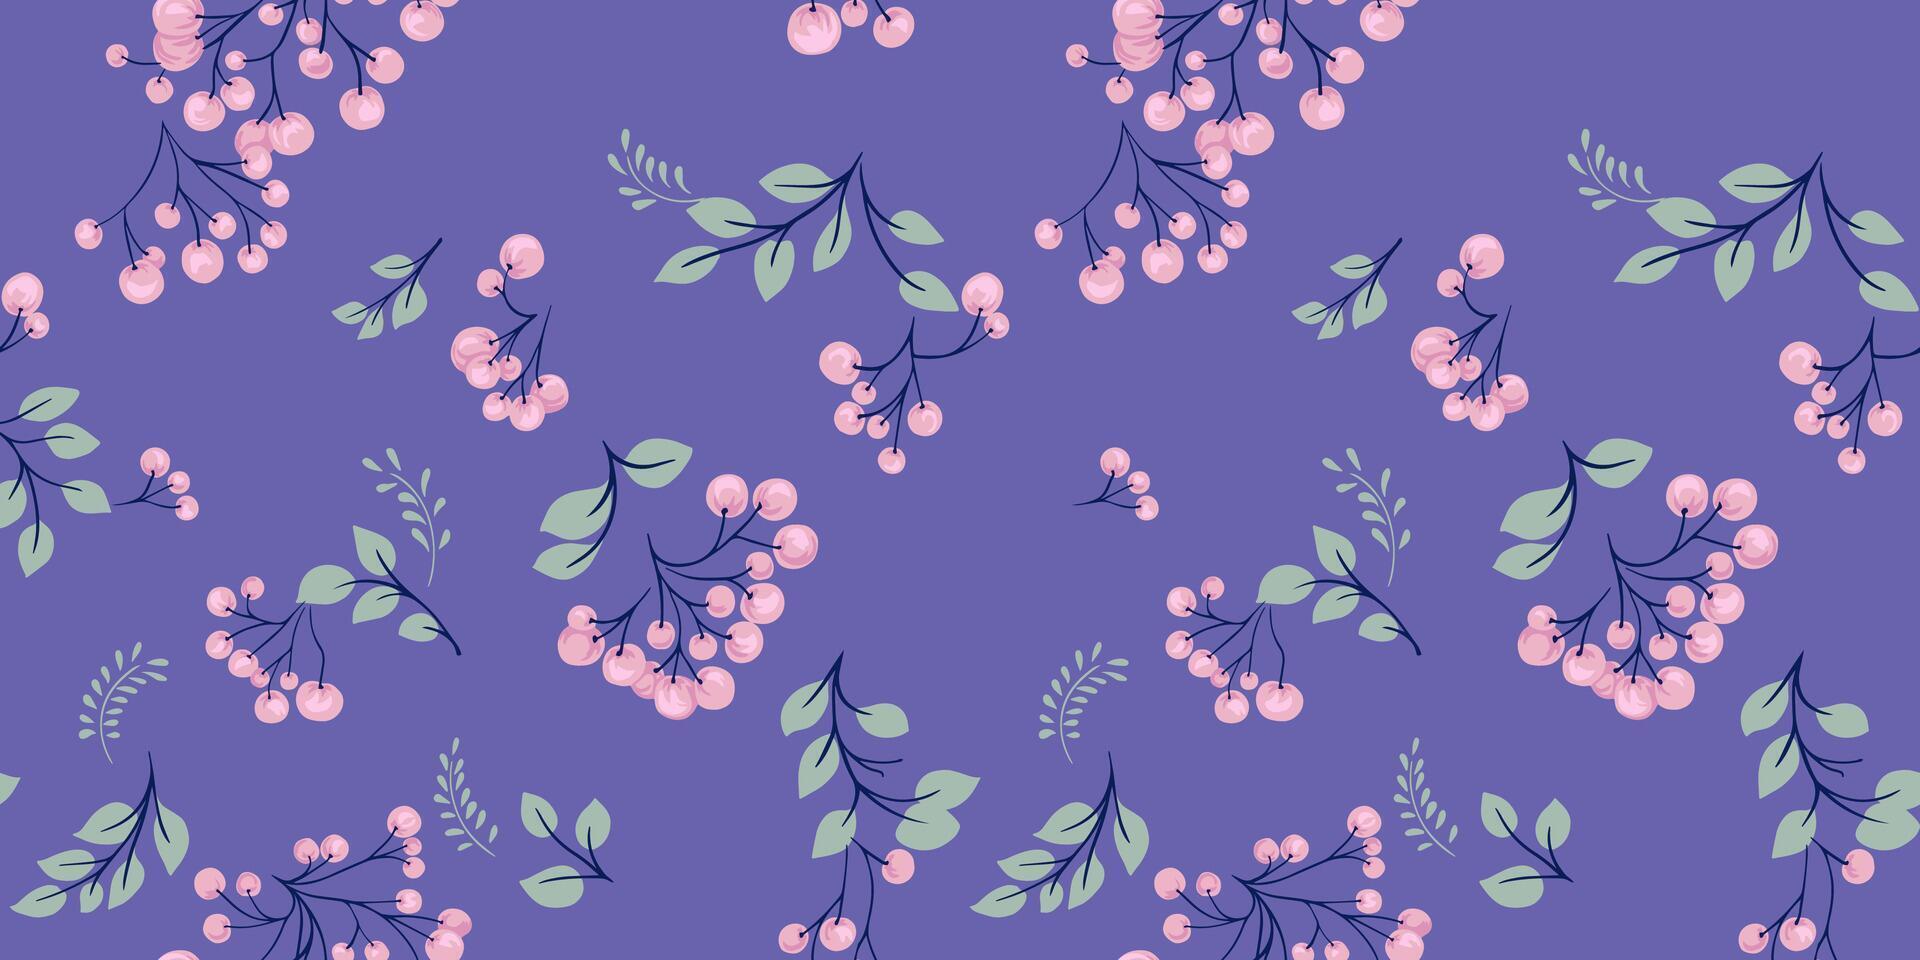 abstrakt grenar av bär med löv spridd slumpvis i en sömlös violett mönster. vektor dragen hand. stiliserade enbär, buxbom, Viburnum, berberis utskrift. mall för mönster